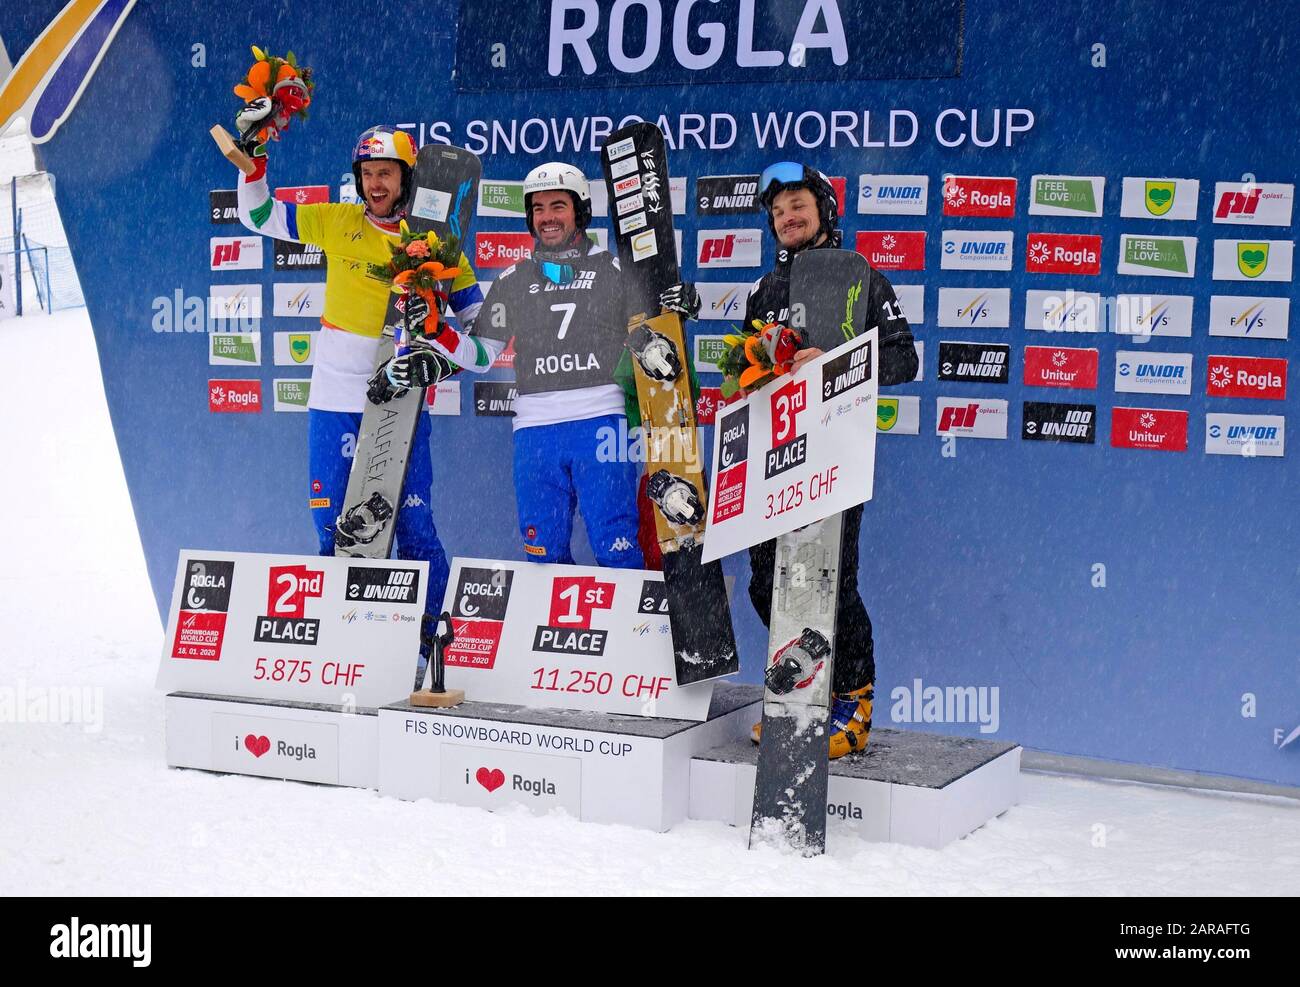 Snowboard-Parallelslalom-Männer Sieger im Wettbewerb um DEN WELTCUP 2020. Rogla, Slowenien. 1. Edwin Corrati (Ita); 2. Roland Fischnaller (Ita); 3. Vic Stockfoto